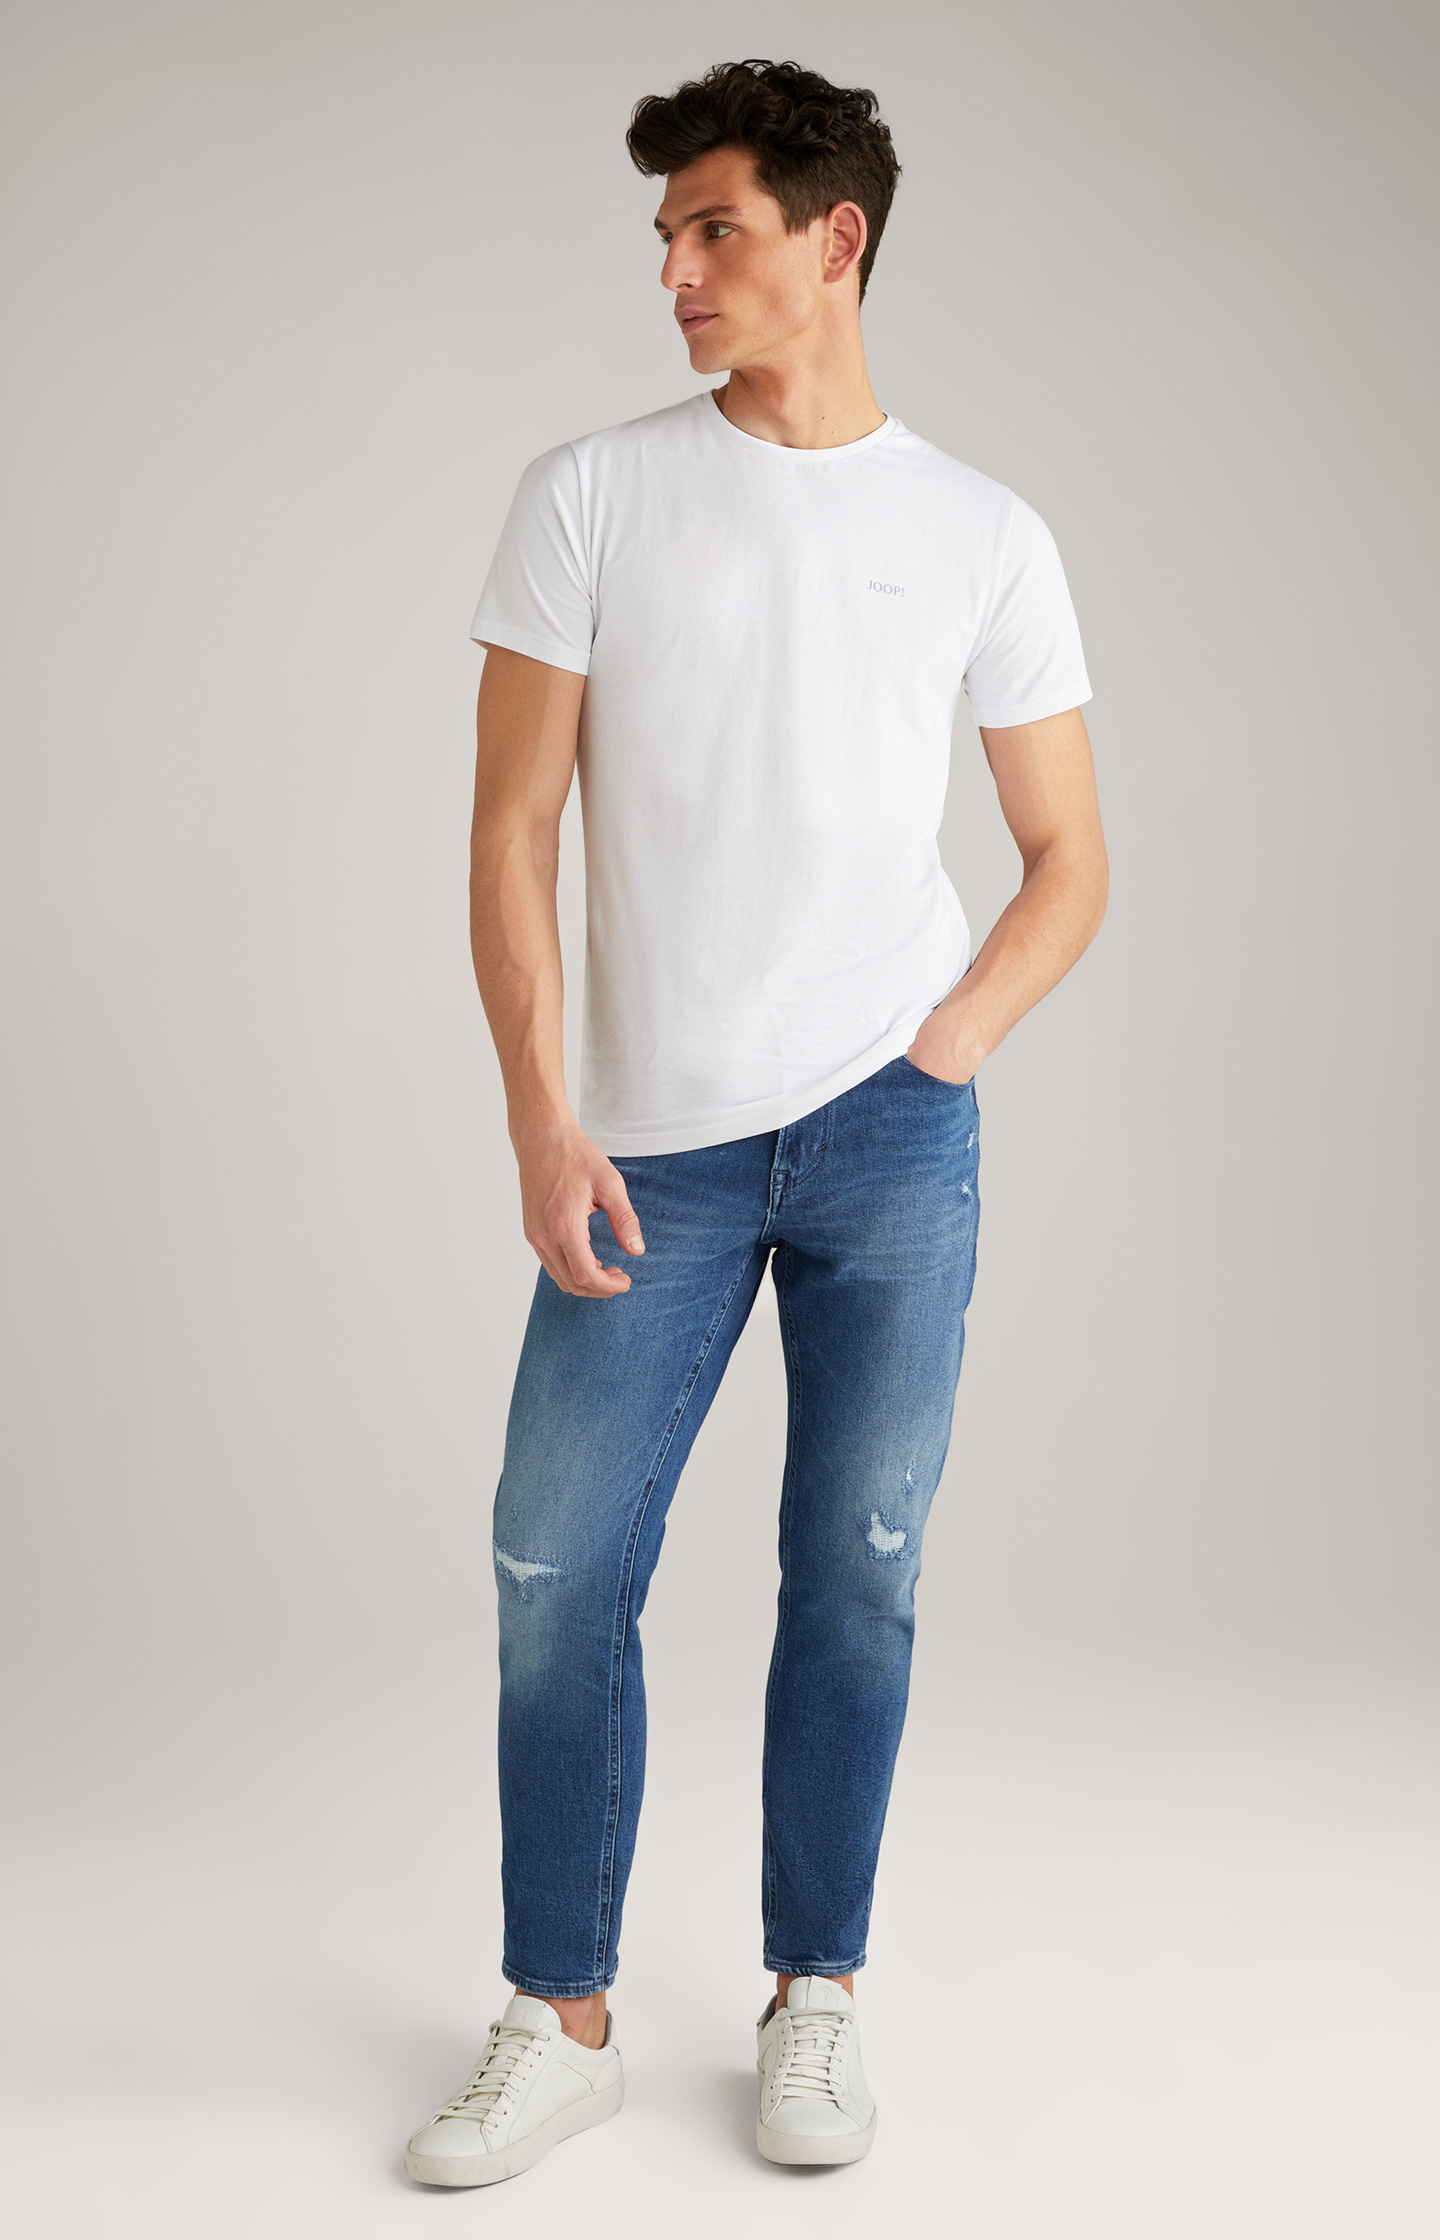 Blue in in Re-Flex Shop - the Pale Jeans JOOP! Online